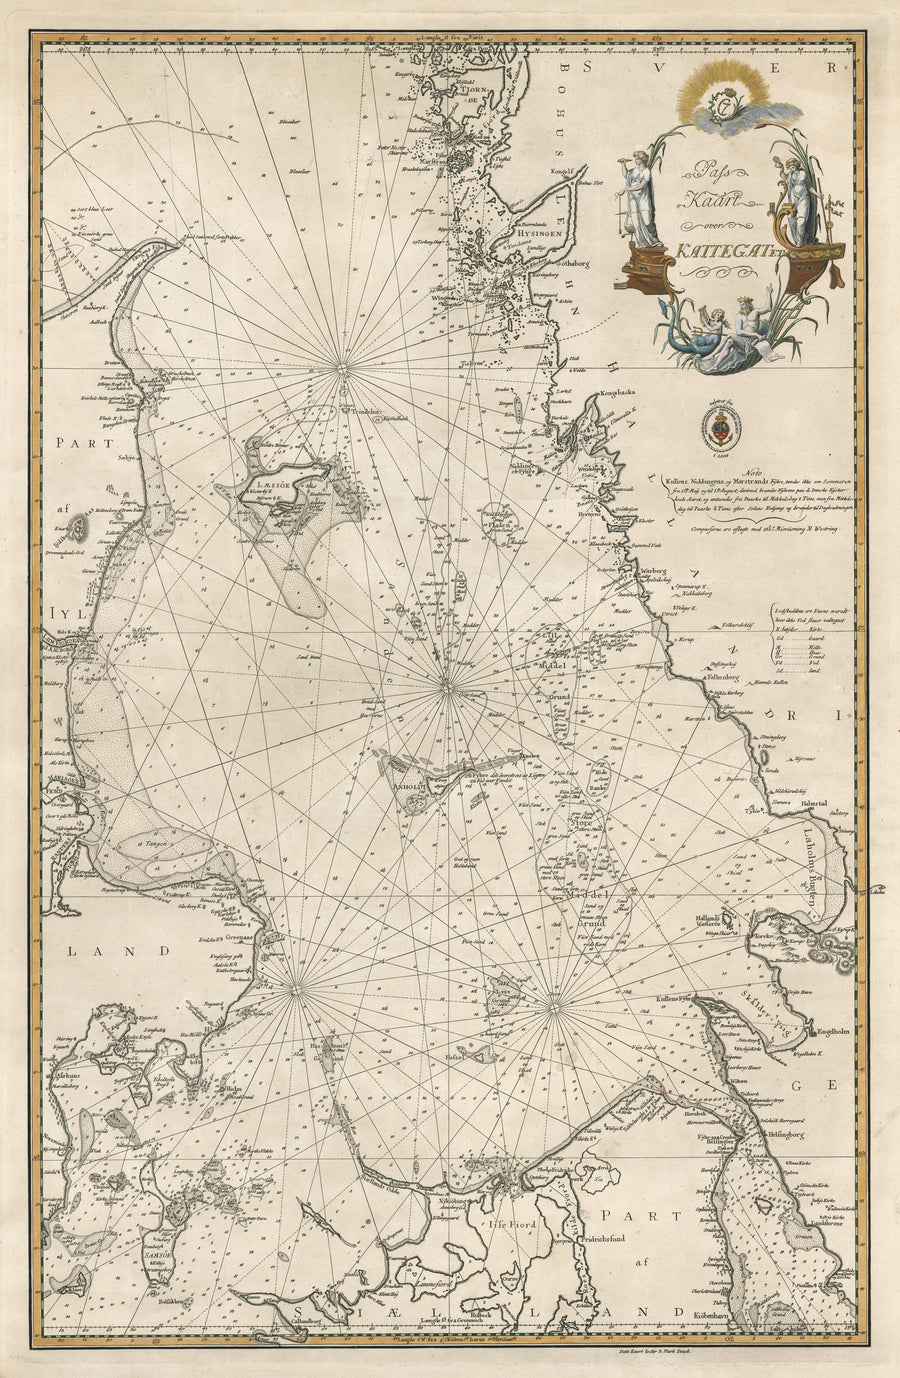 Antique Nautical Chart: Pass Kaart over Kattegat by: Jean-René de Verdun, 1805